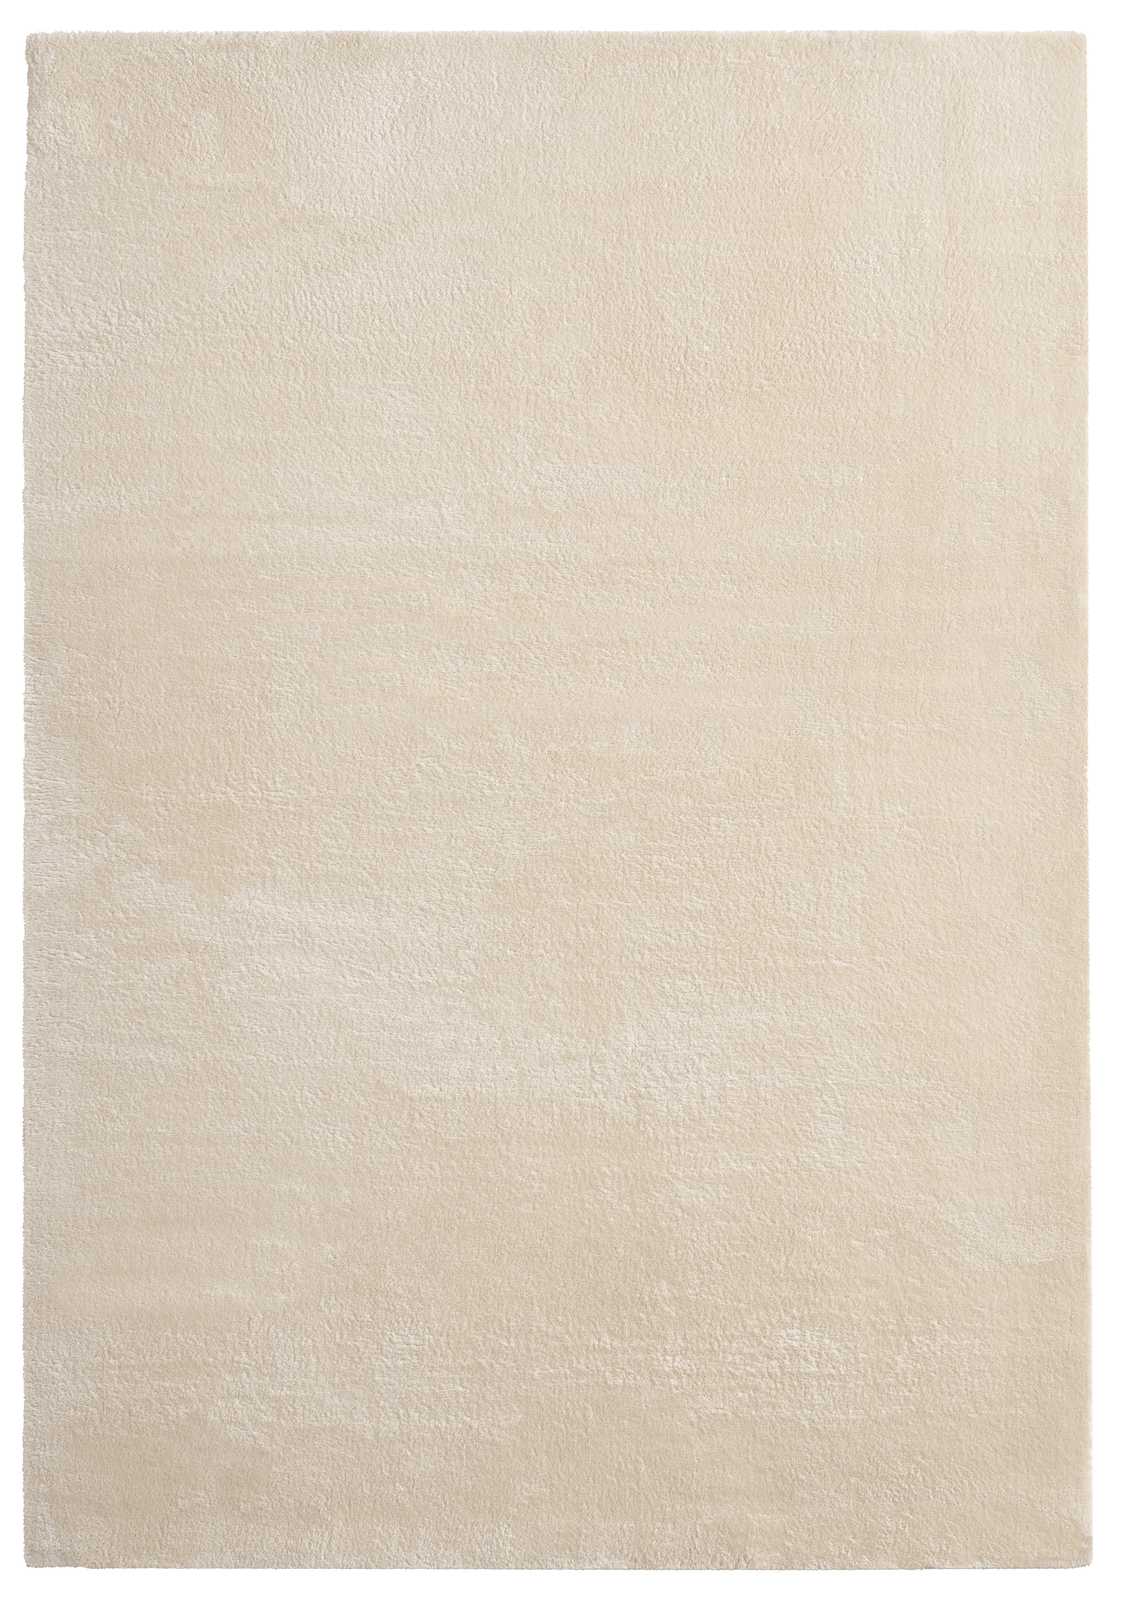             Tappeto morbido a pelo alto in beige - 110 x 60 cm
        